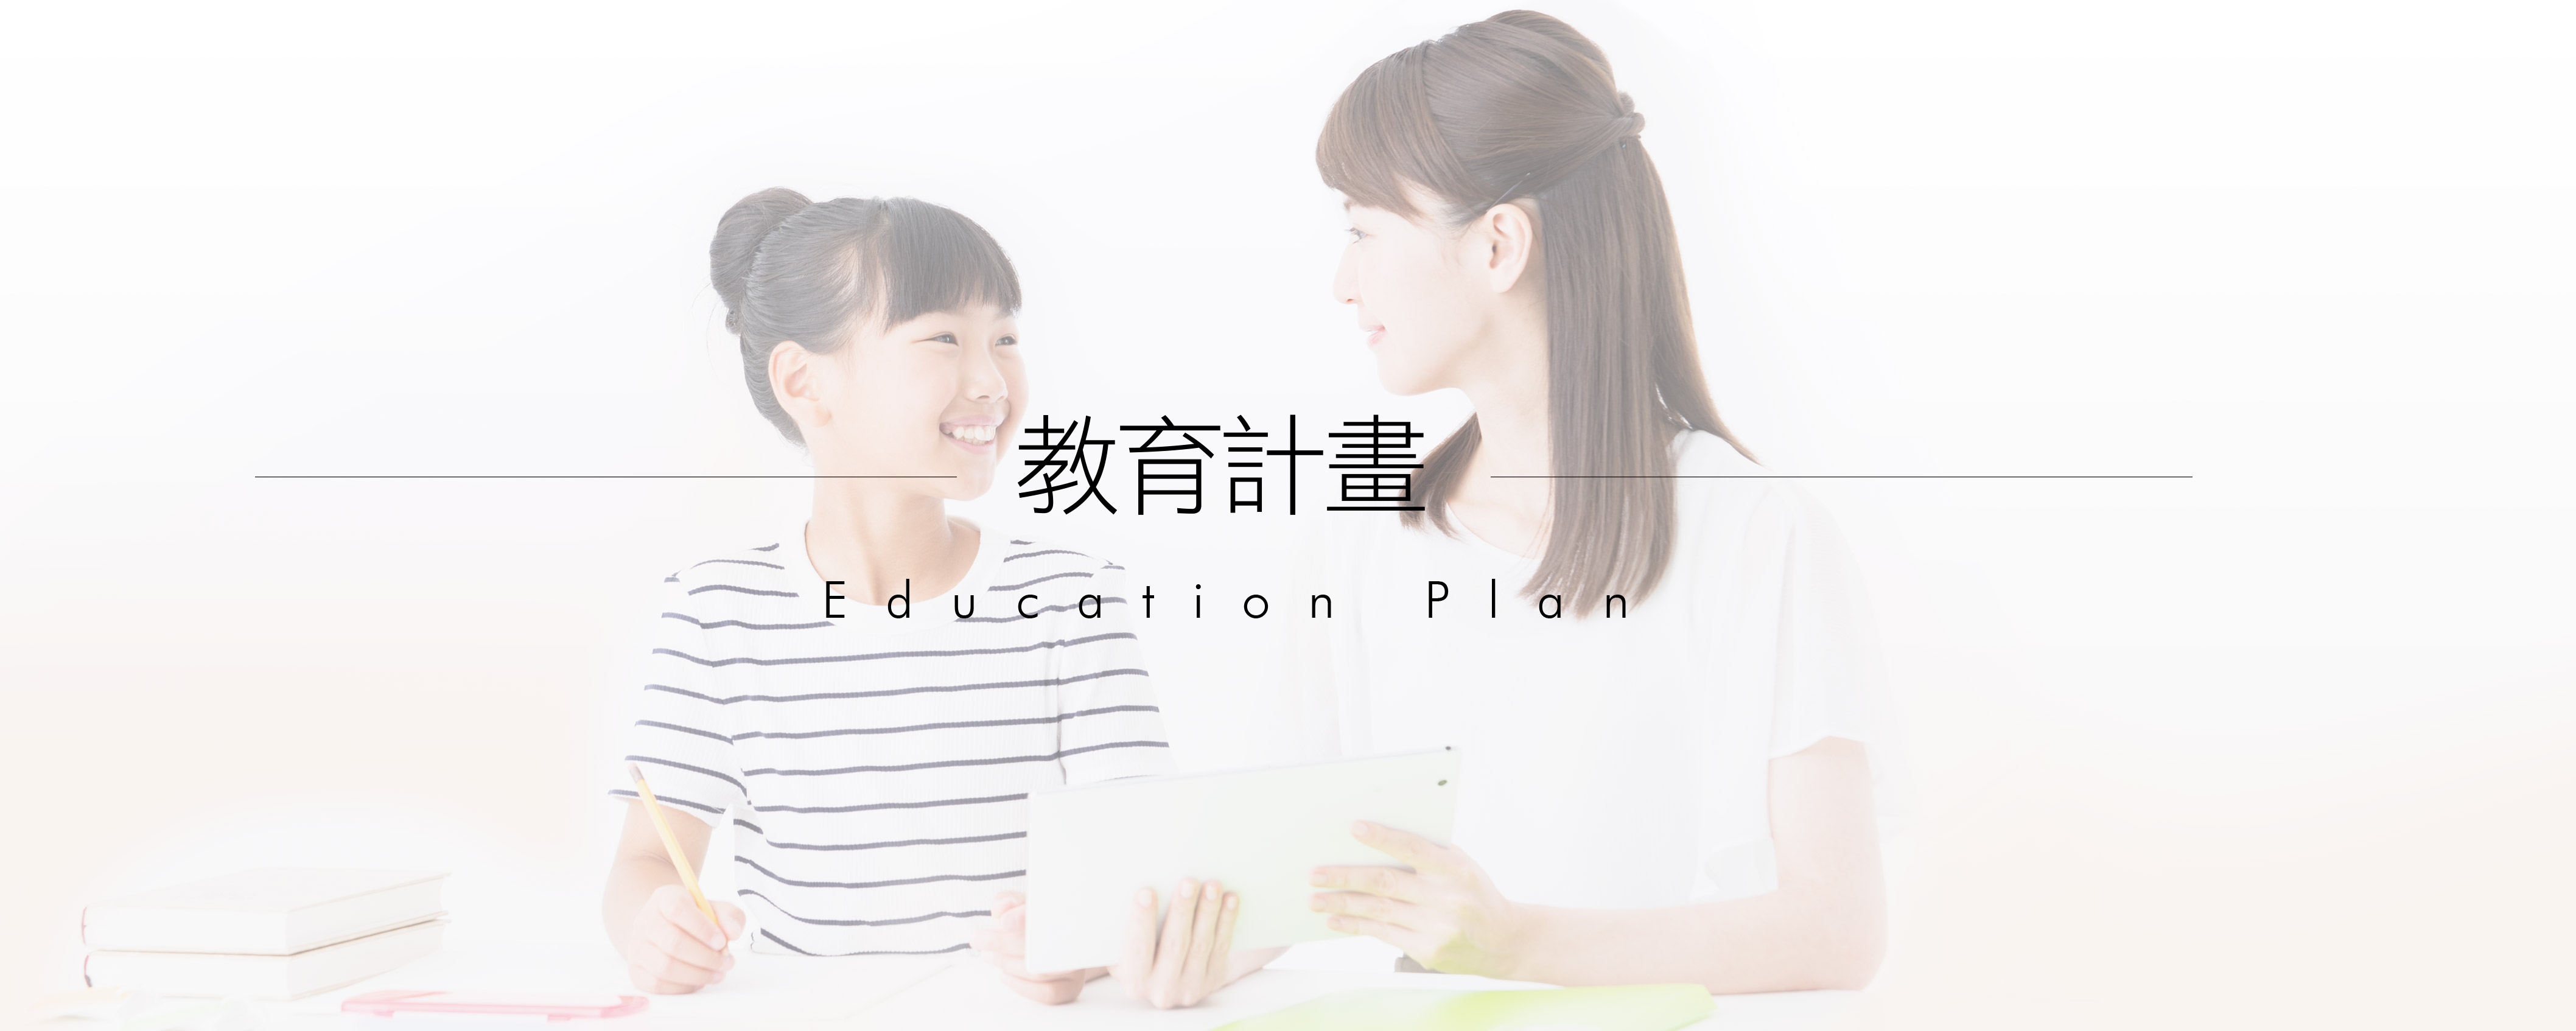 教育計劃 Education Plan